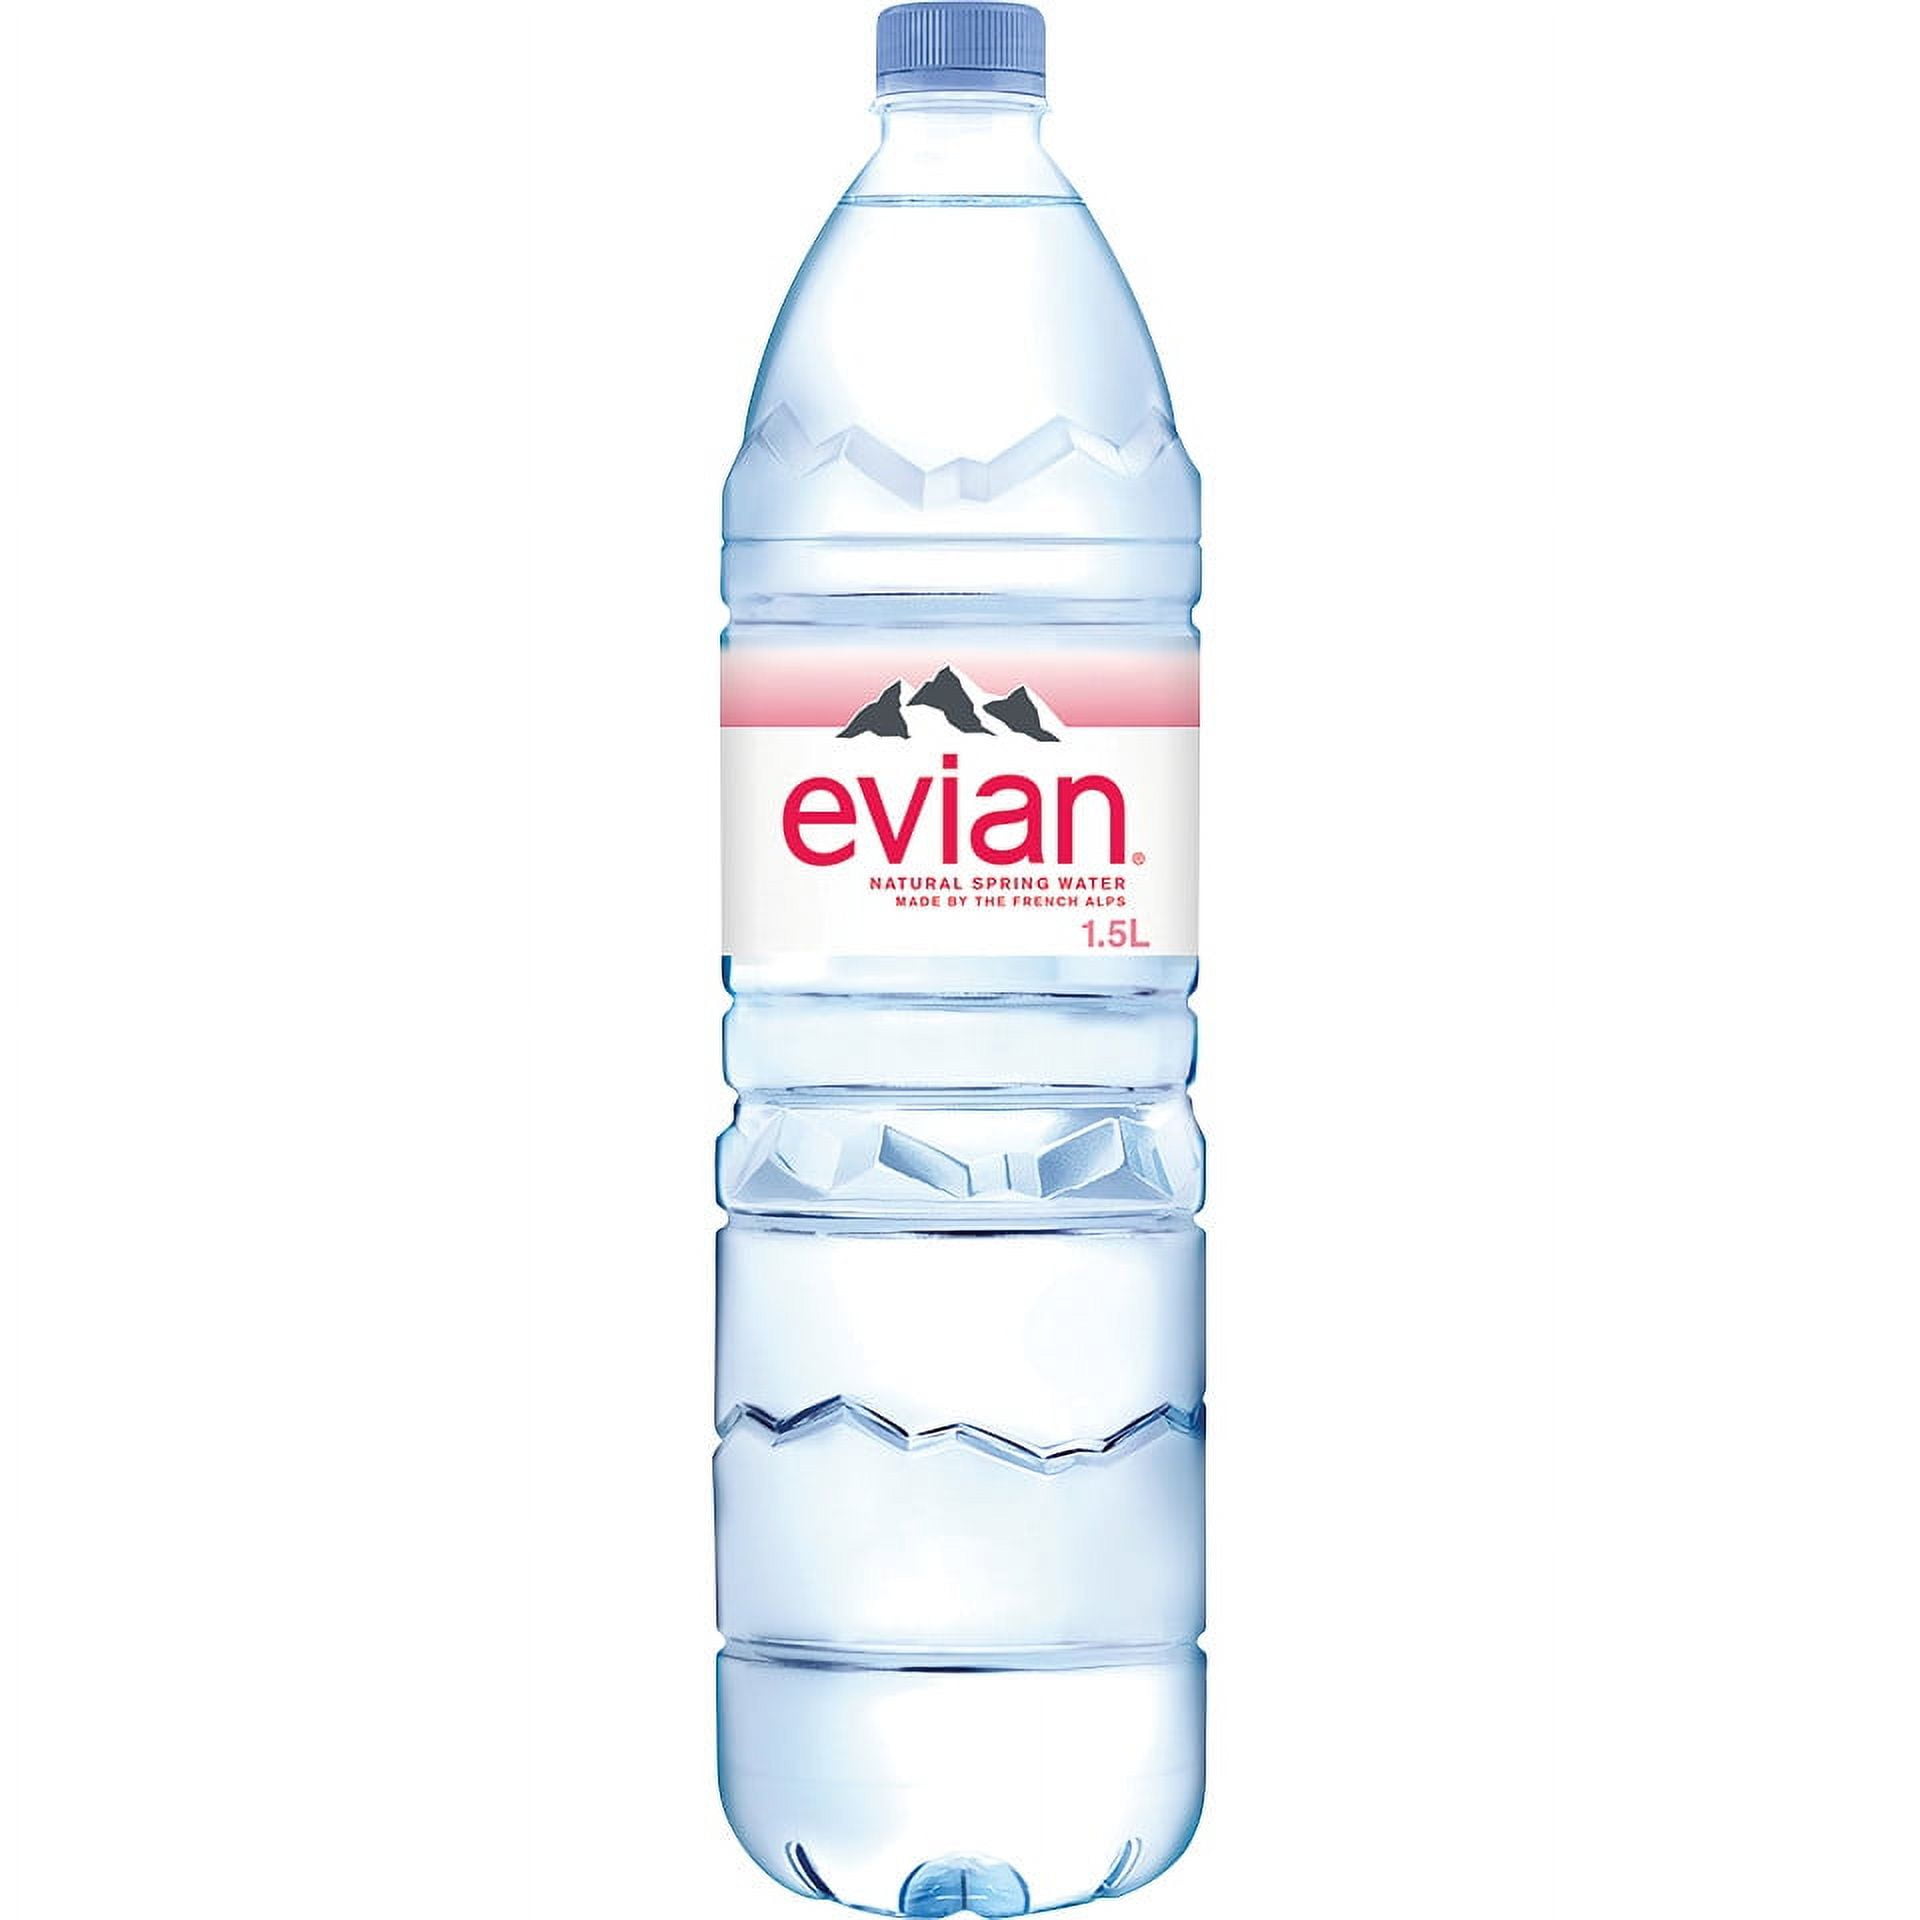 Evian Natural Spring Water, 1.5 lt Bottle